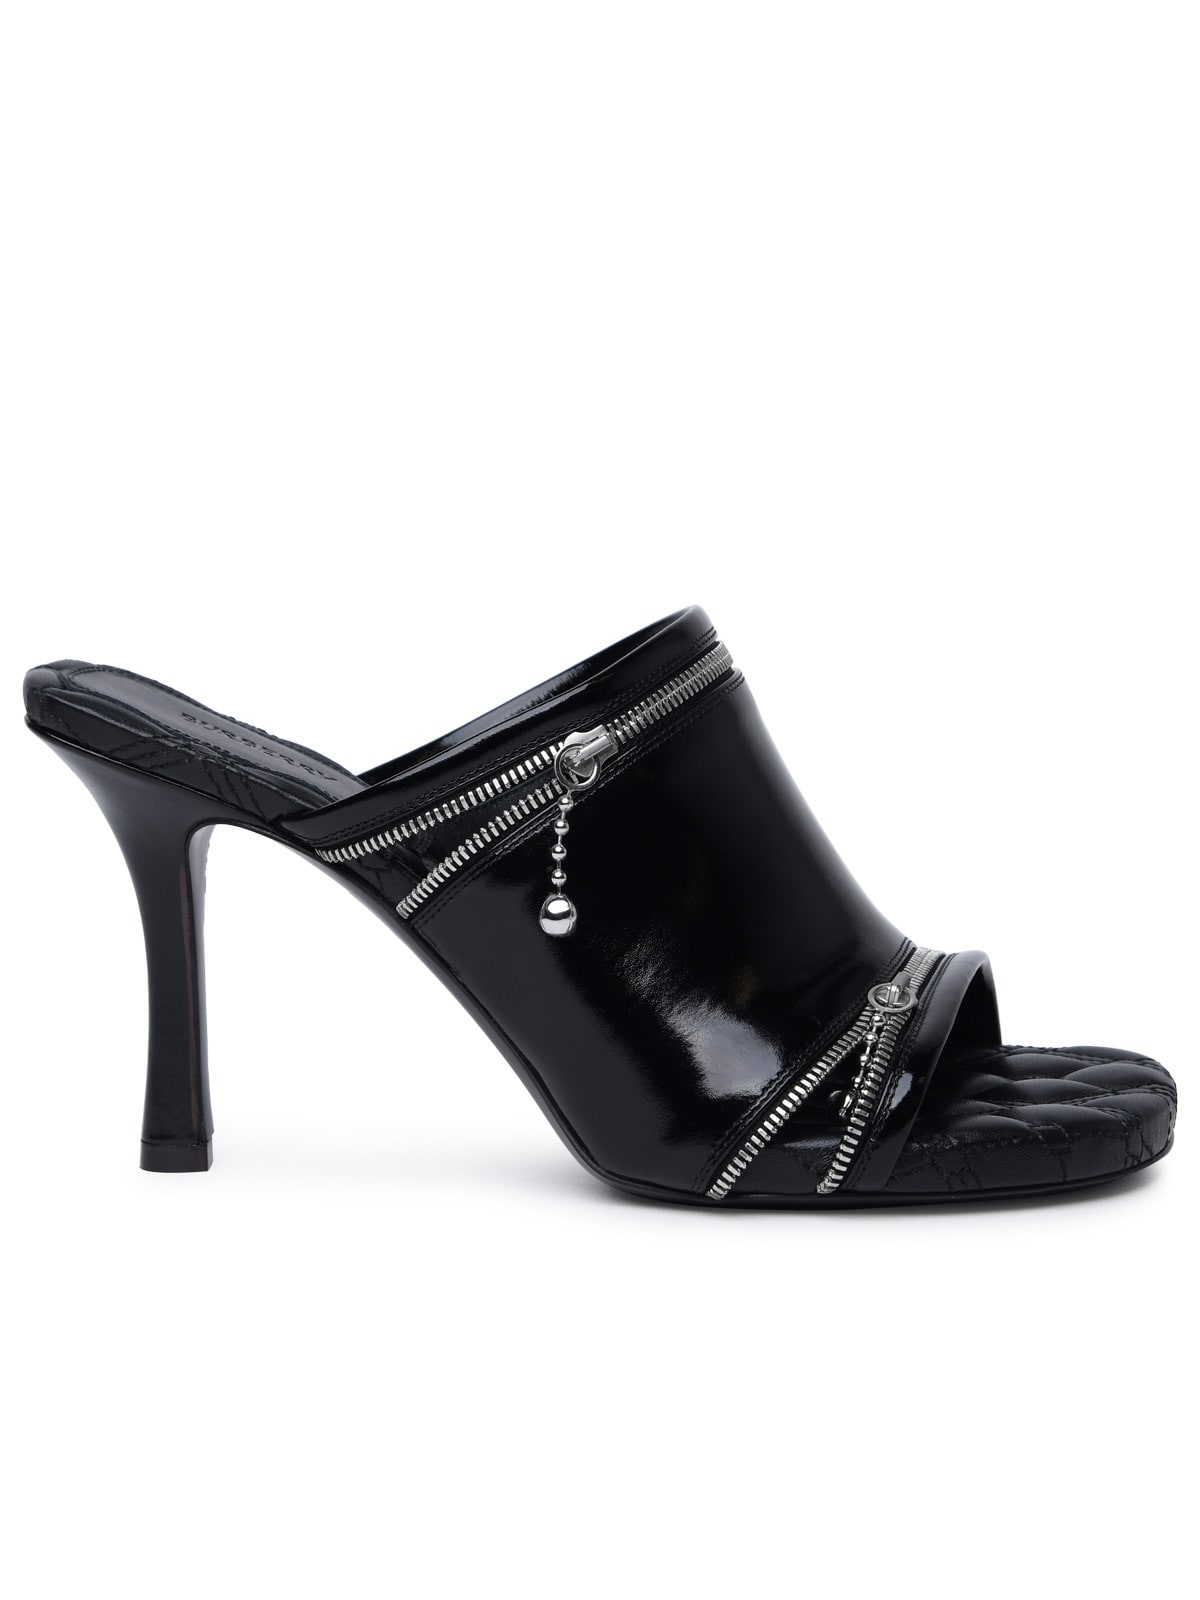 peep Black Leather Sandals